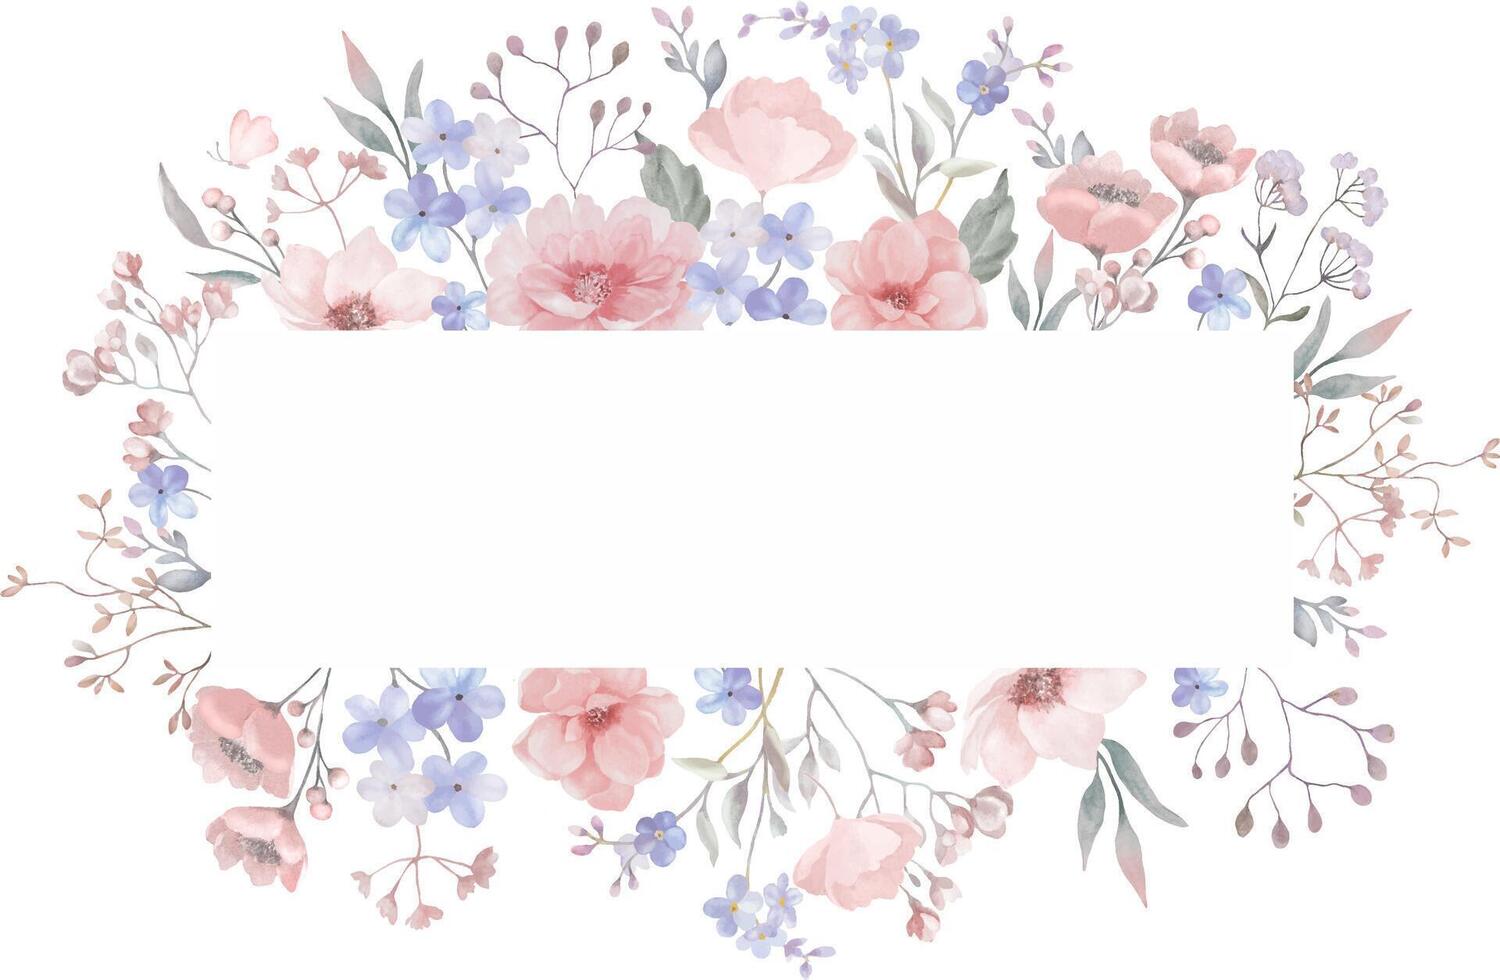 Aquarell Blumen- Karte. Hand gezeichnet Illustration isoliert auf Weiß Hintergrund. Vektor Folge.